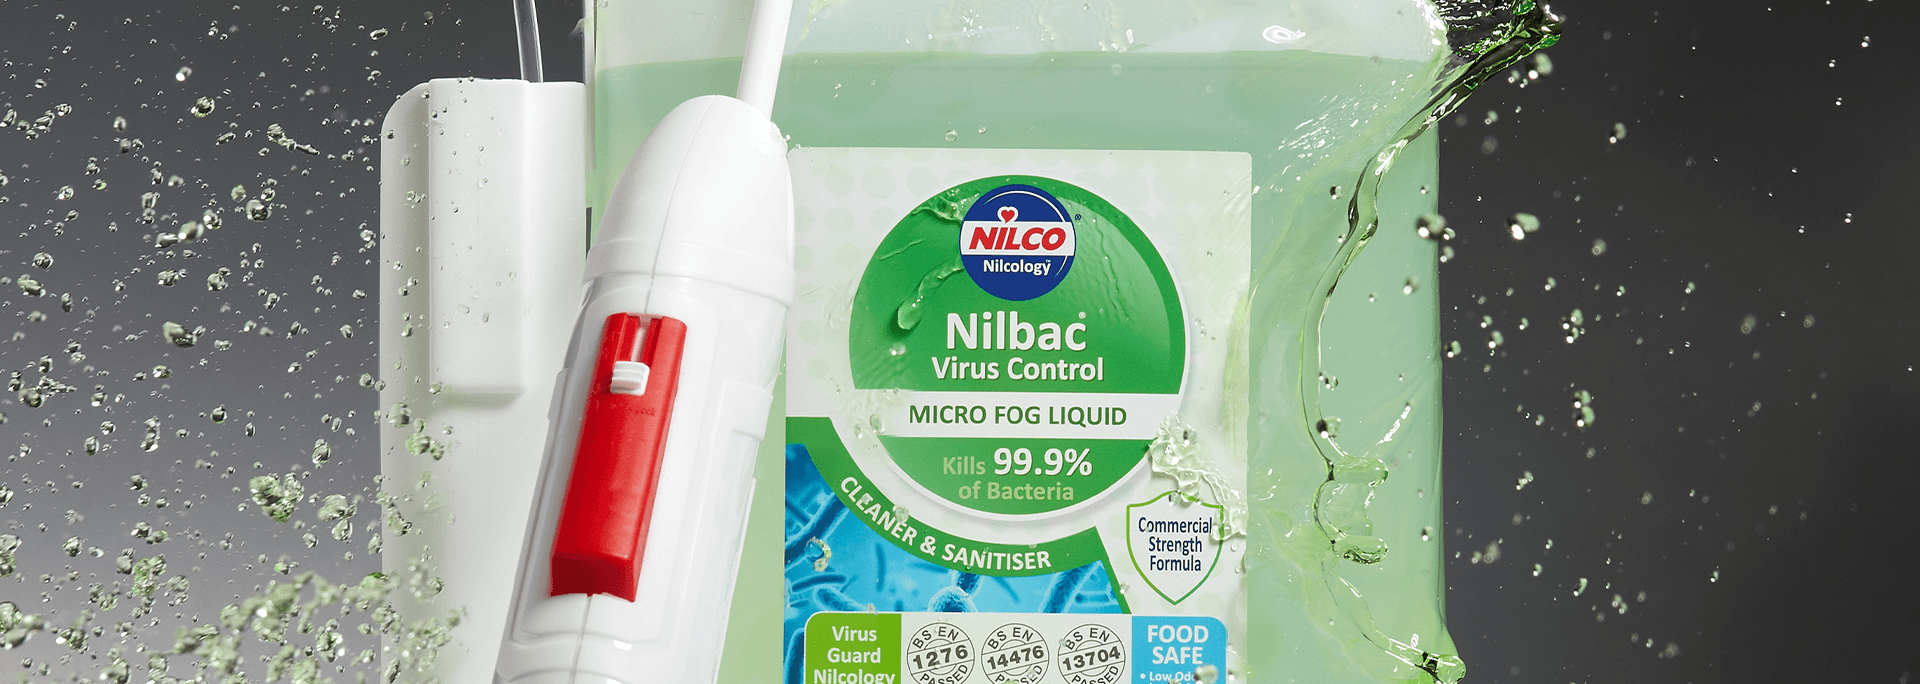 nilco-banner